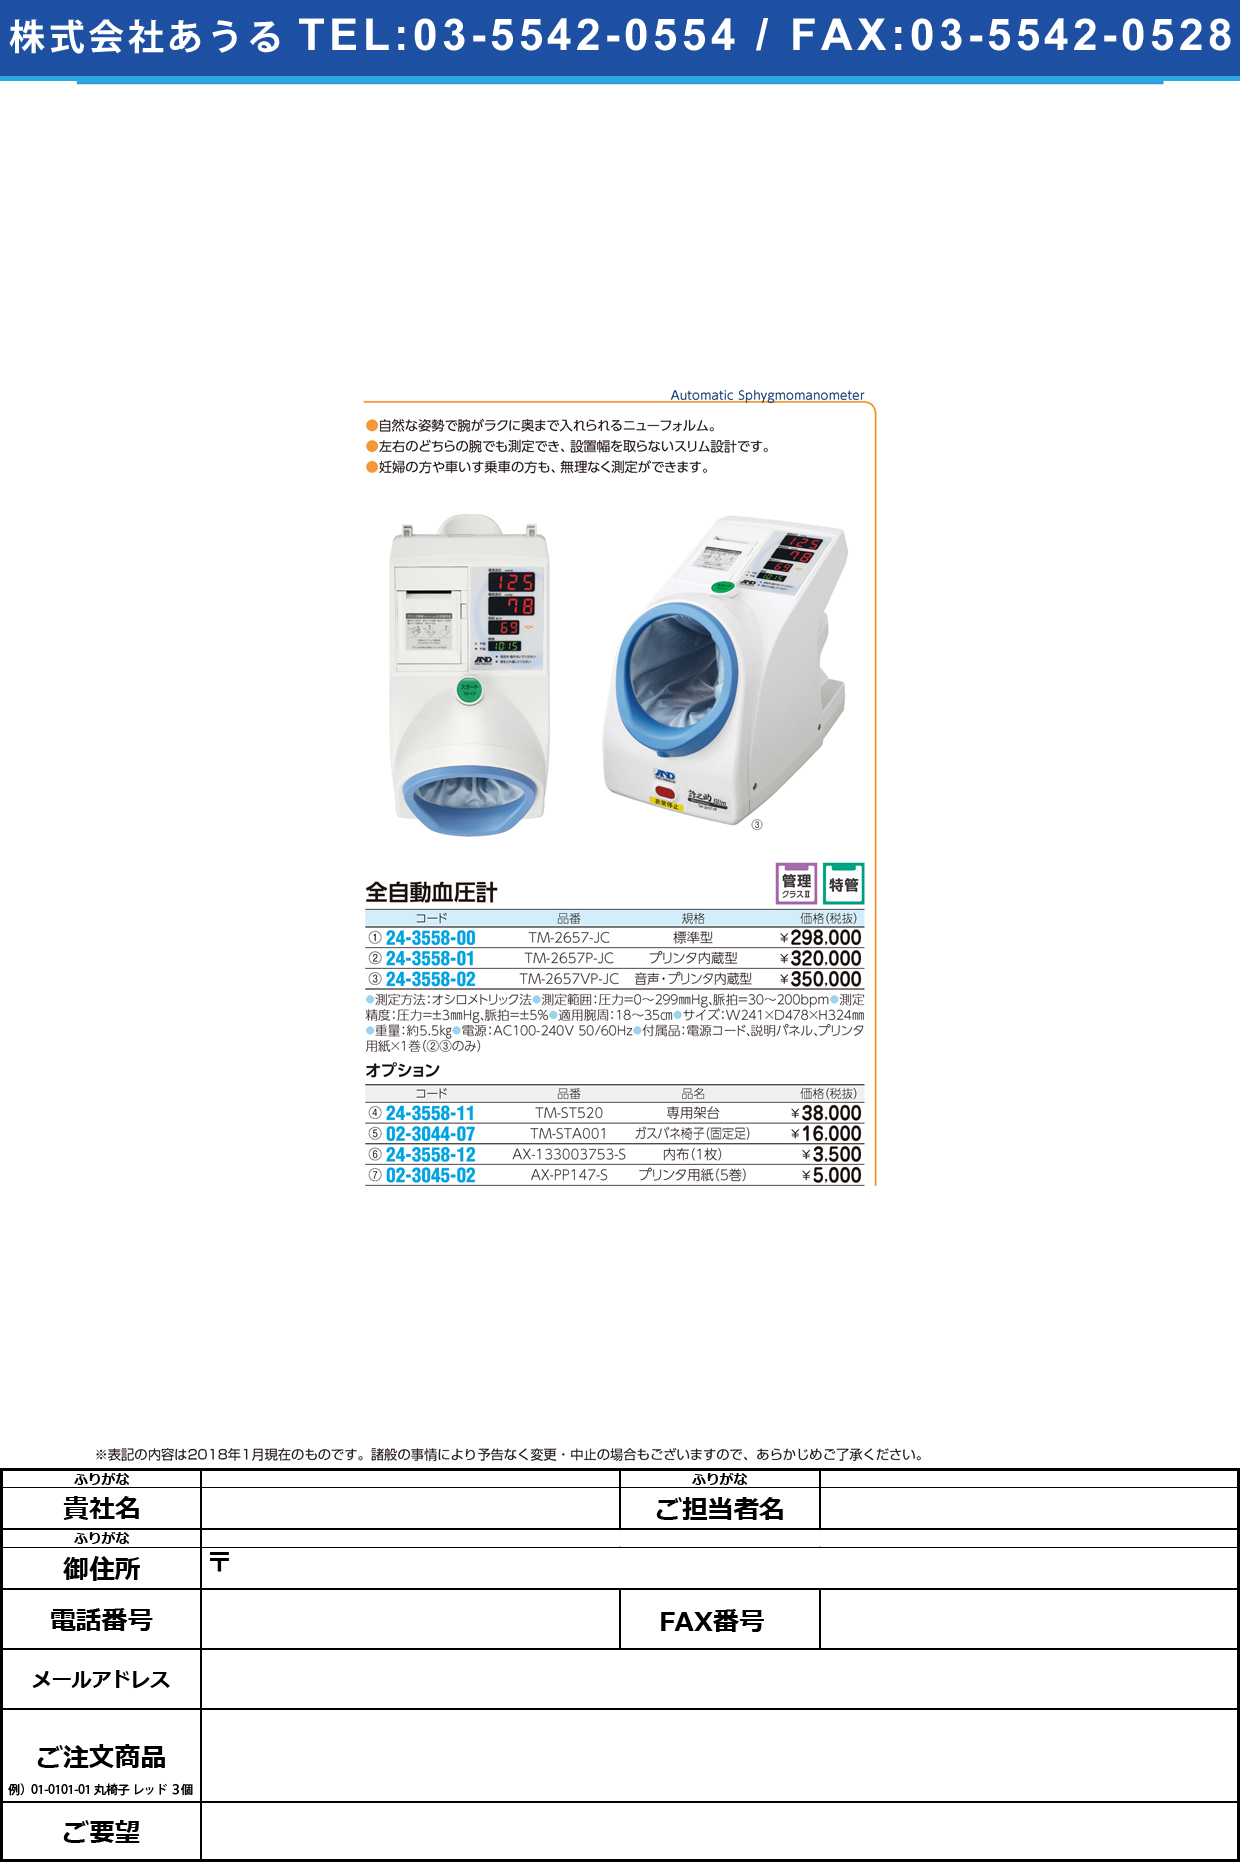 (24-3558-00)全自動血圧計（標準型） TM-2657-JC ｾﾞﾝｼﾞﾄﾞｳｹﾂｱﾂｹｲ(エー・アンド・デイ)【1台単位】【2019年カタログ商品】